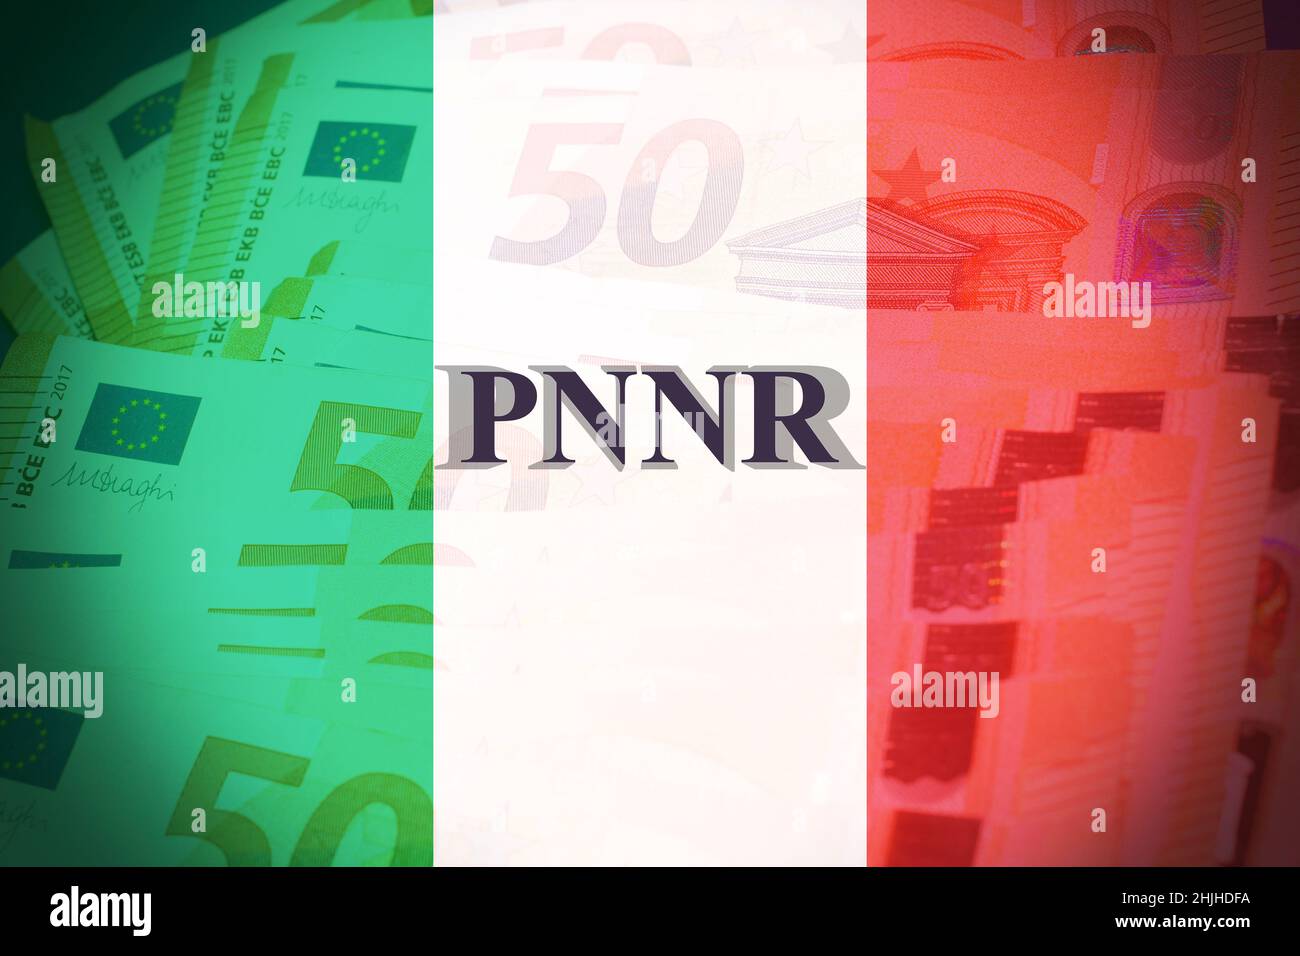 Monnaie européenne avec le signe 'Pnrr' avec le drapeau italien comme toile de fond, concept de l'aide financière européenne Banque D'Images